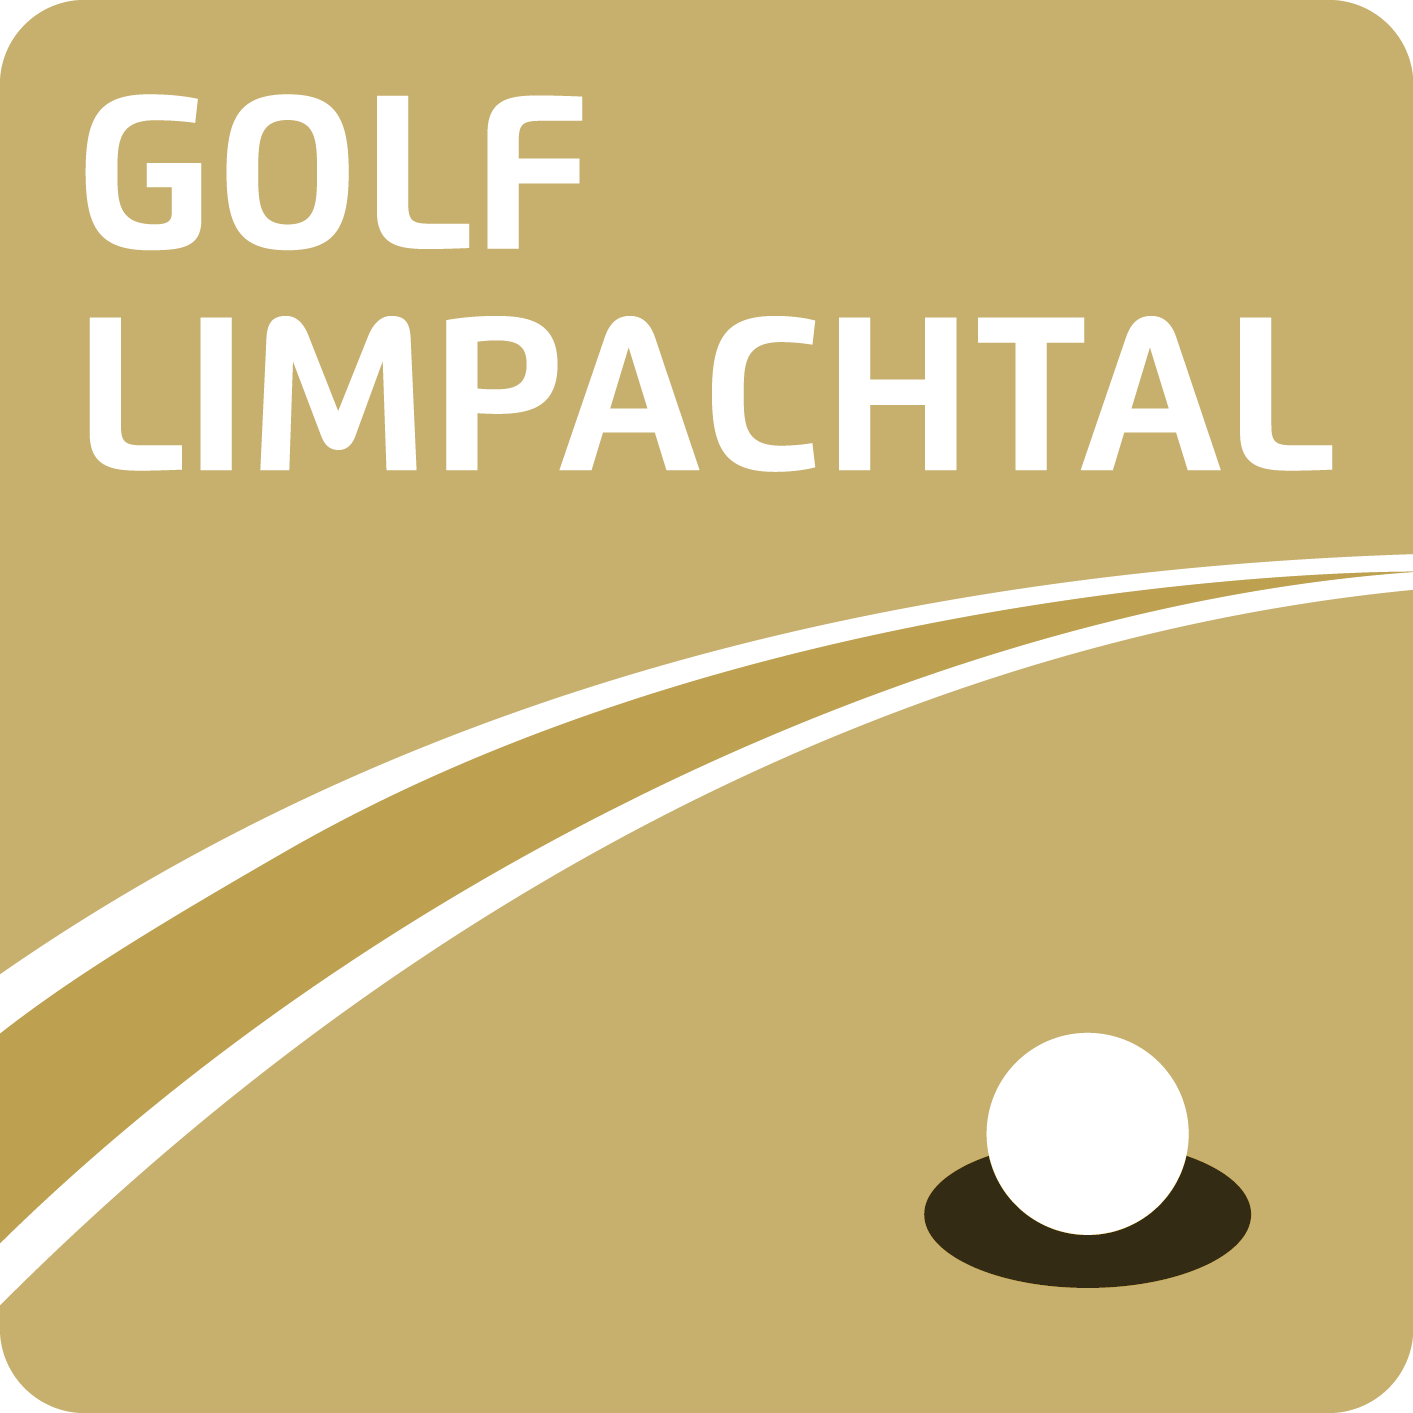 LOGO - CAMP - GOLFCLUB LIMPACHTAL